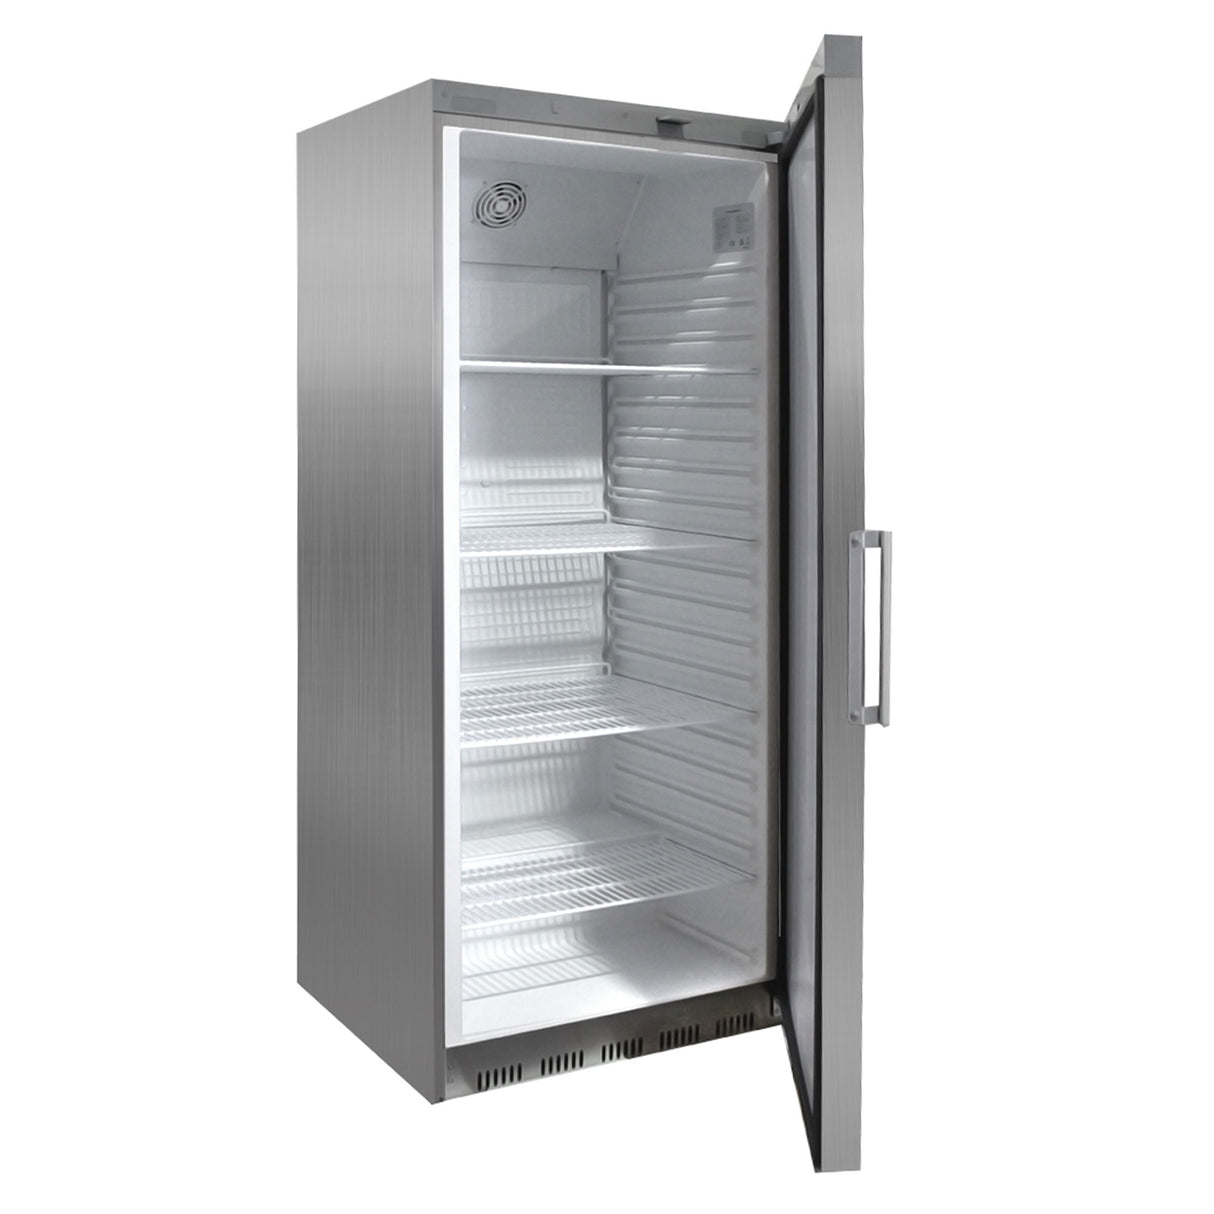 Køleskab af rustfrit stål - 400 liter - med 1 dør